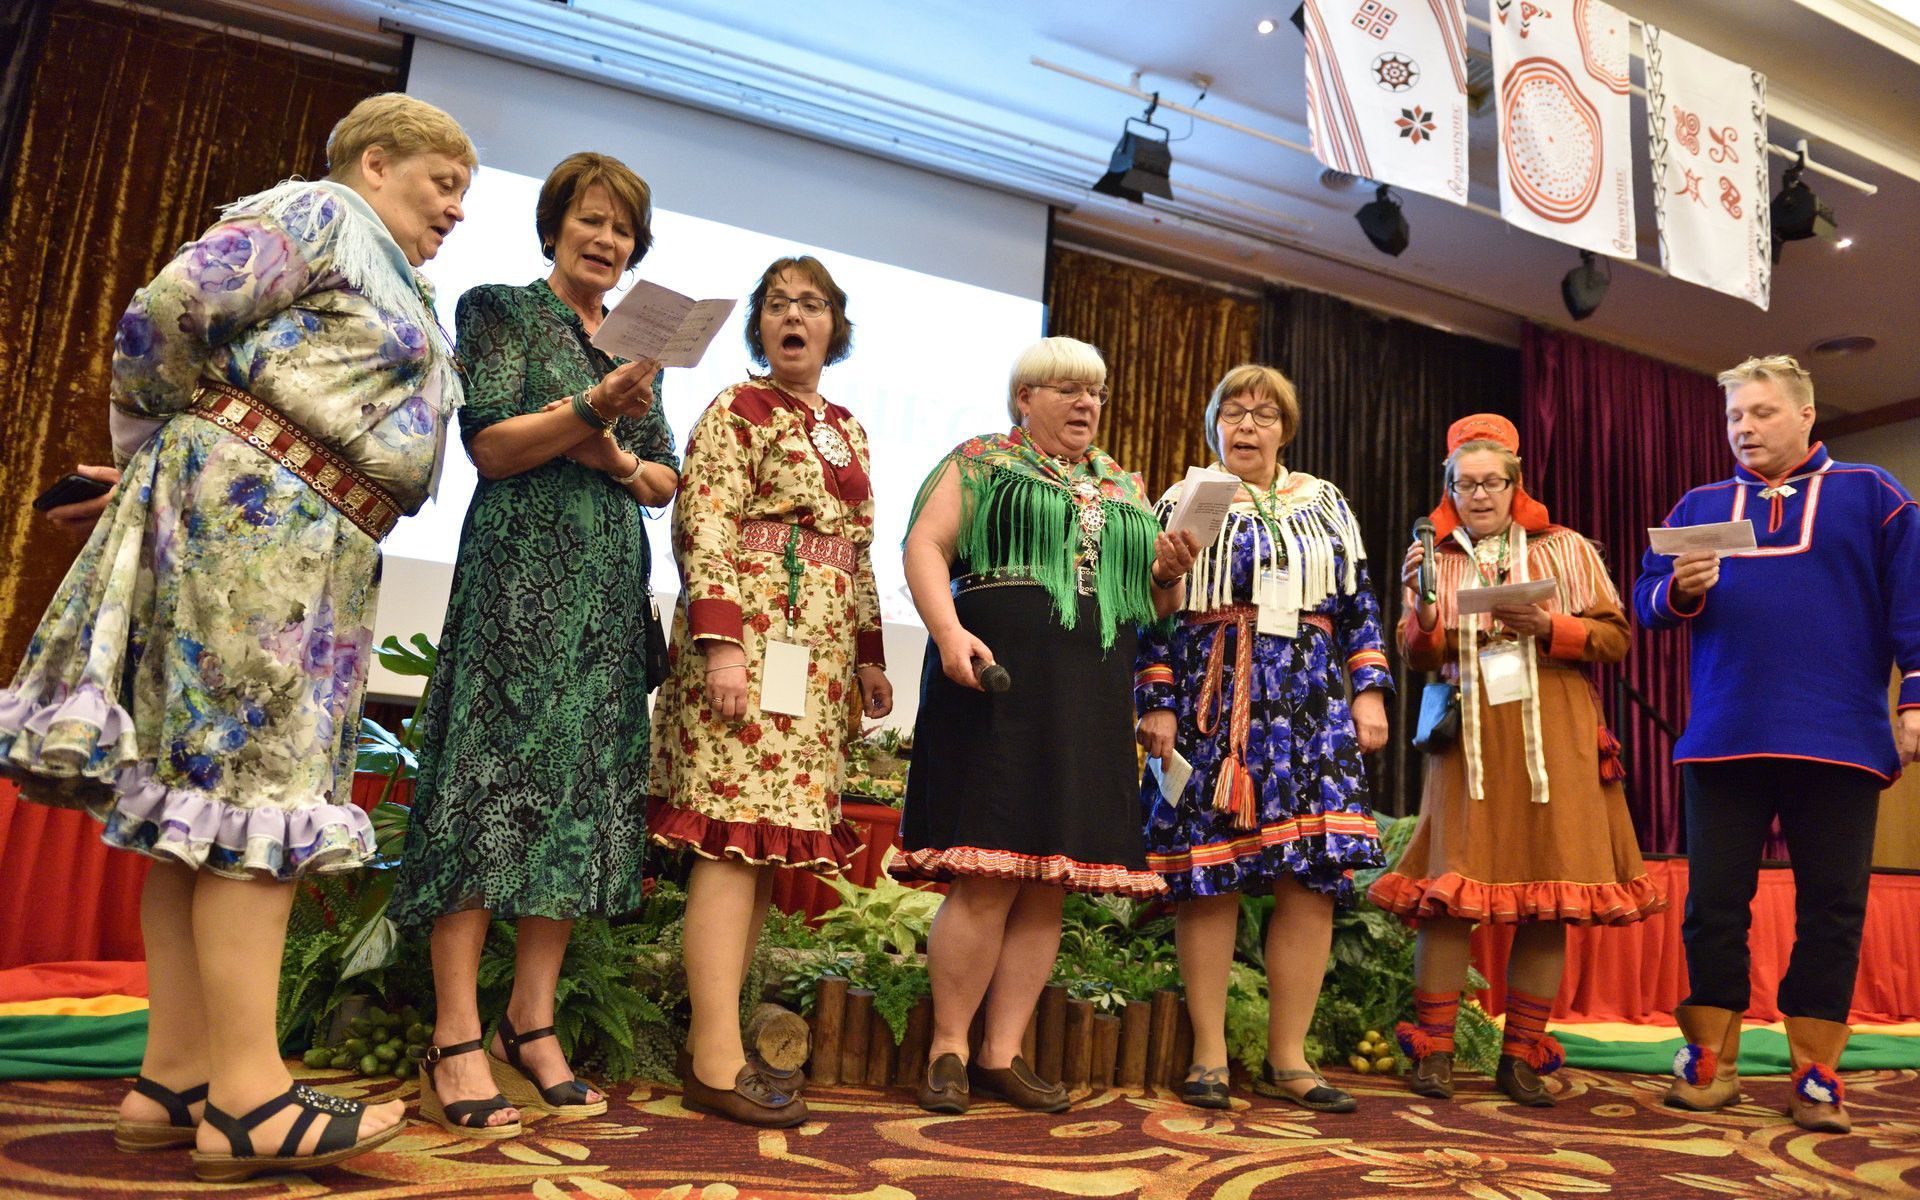 閉幕儀式北歐薩米族人以祝福歌聲感謝主辦國團隊